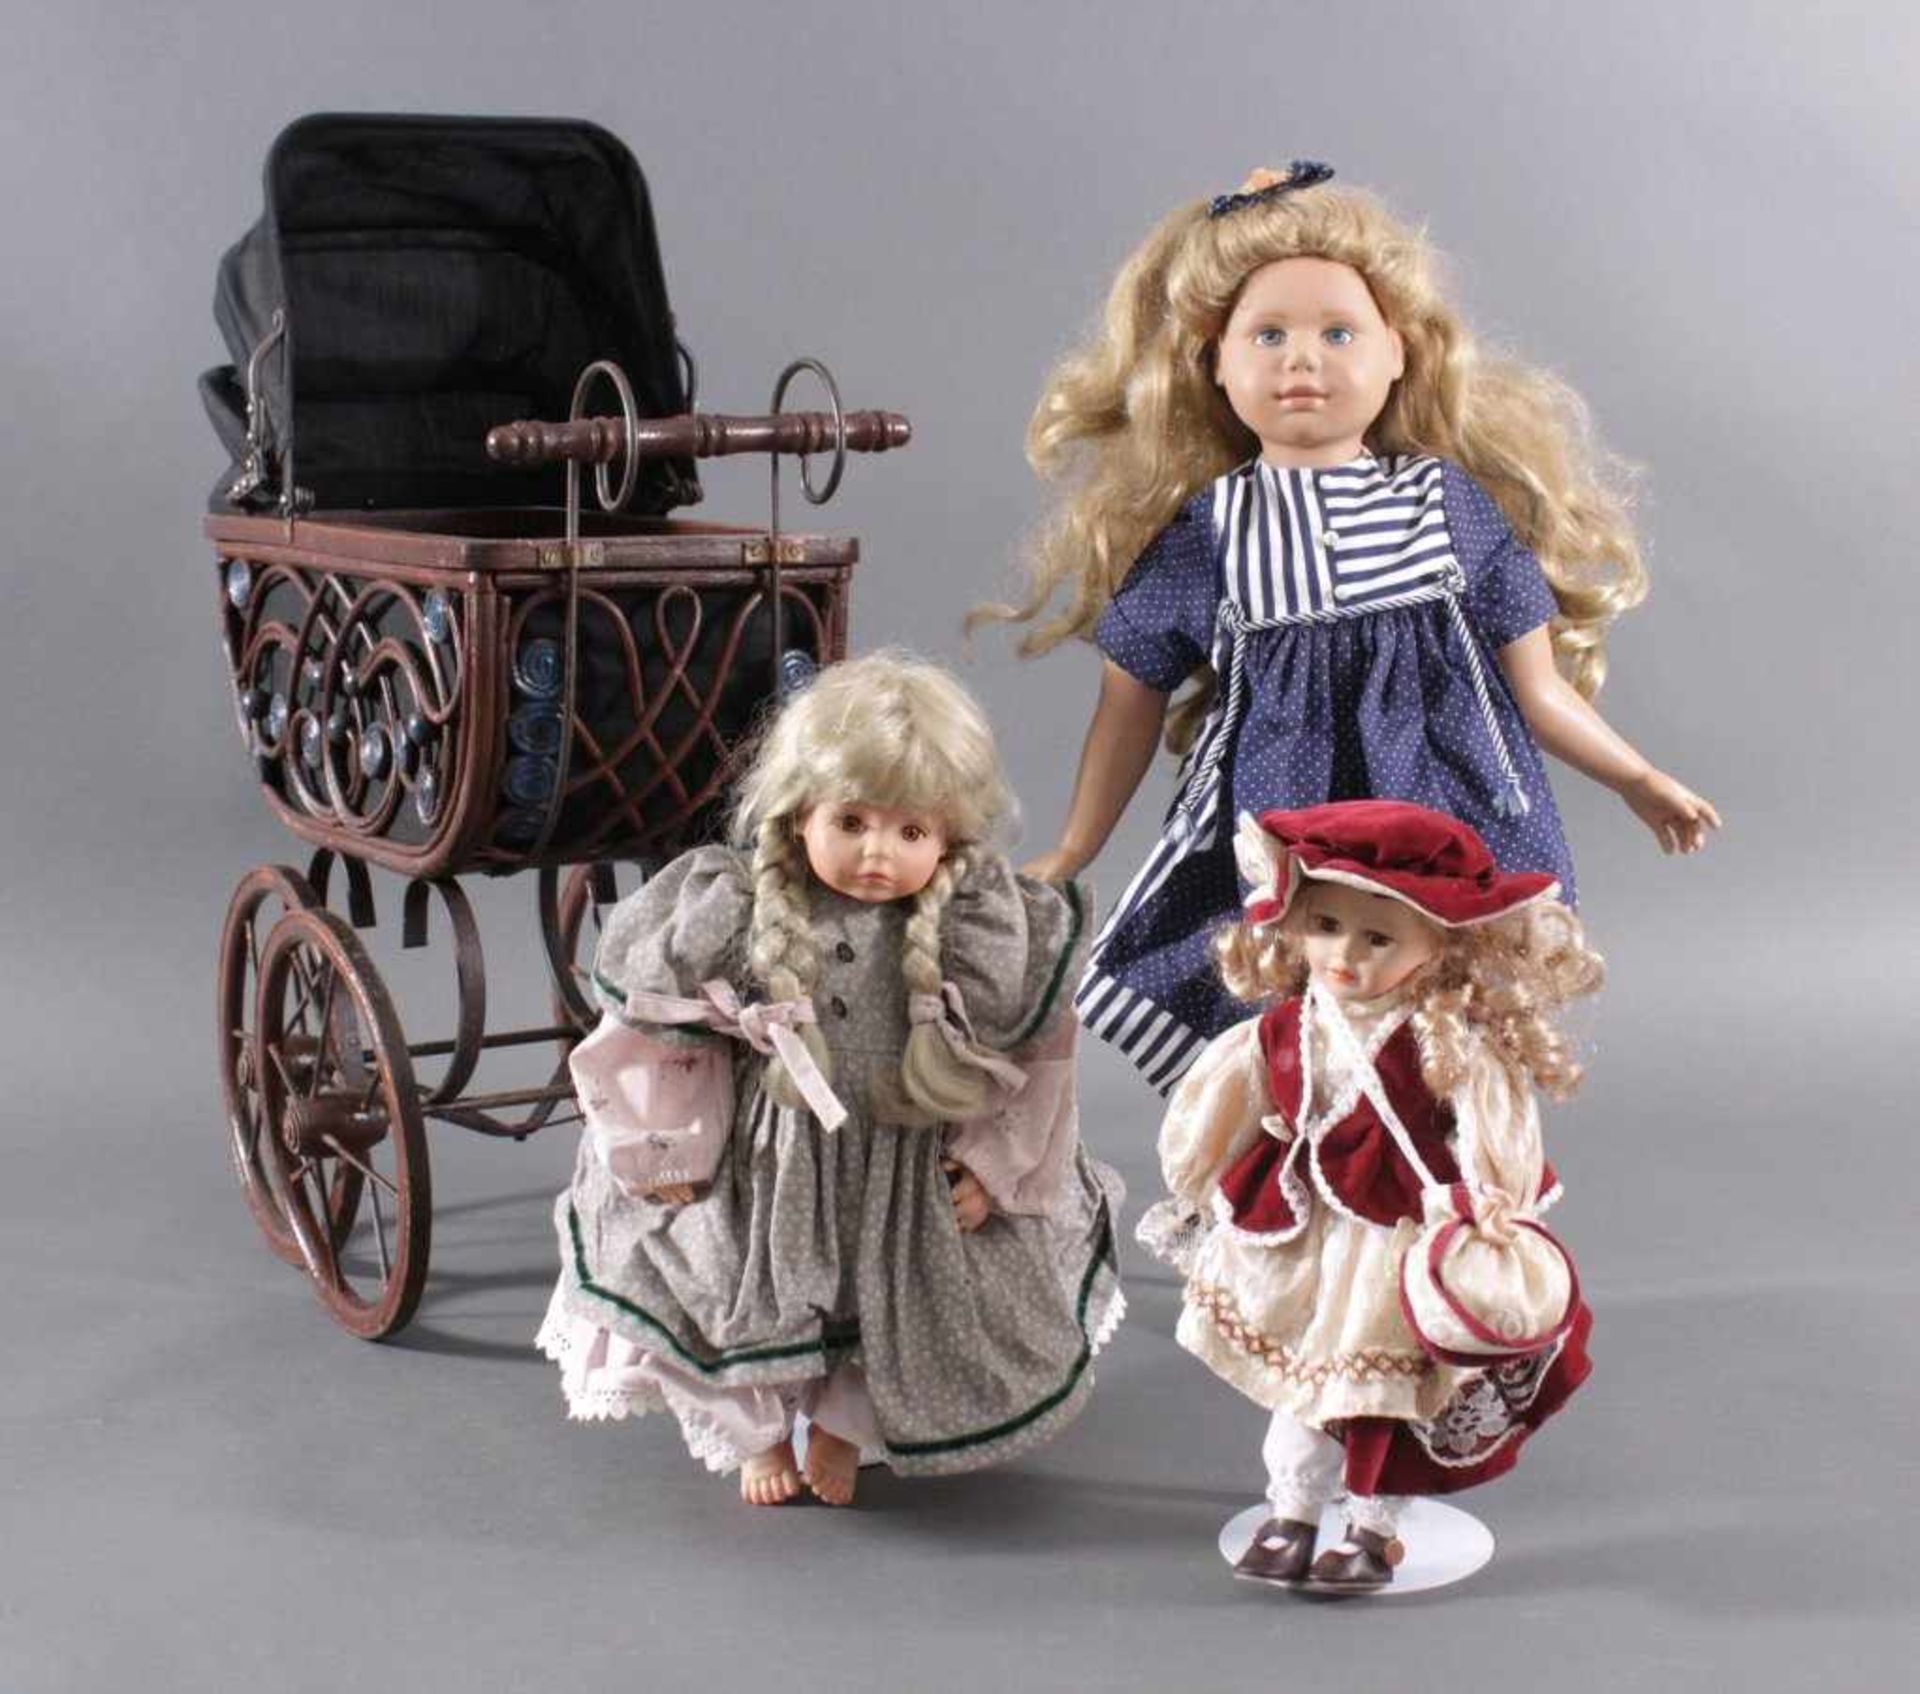 Kinderwagen mit 3 PuppenKleiner Kinderwagen im antiken Stil, Holz/Metall,ca. 63 x 28 x 53 cm.1